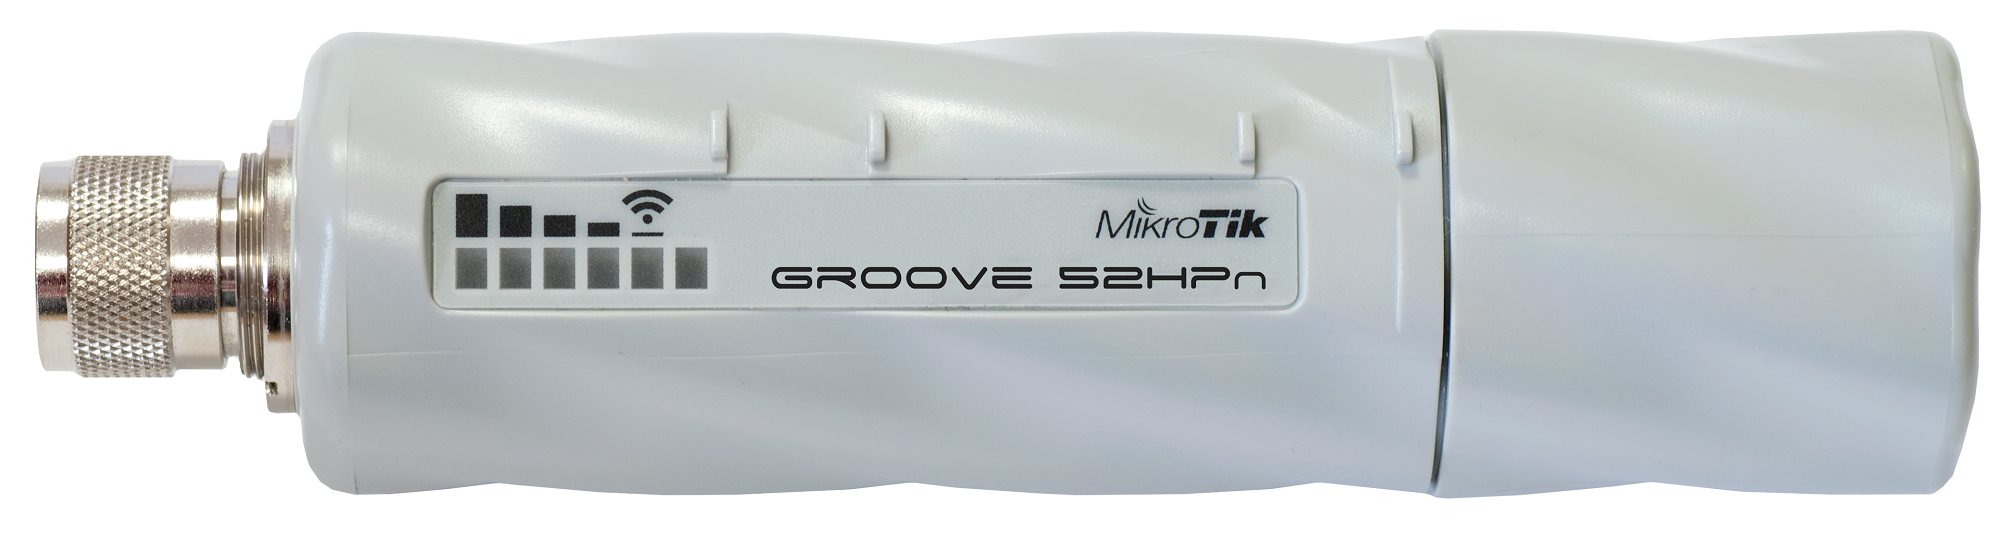 Thiết bị RouterBOARD Mikrotik Groove 5Hn - Hàng chính hãng